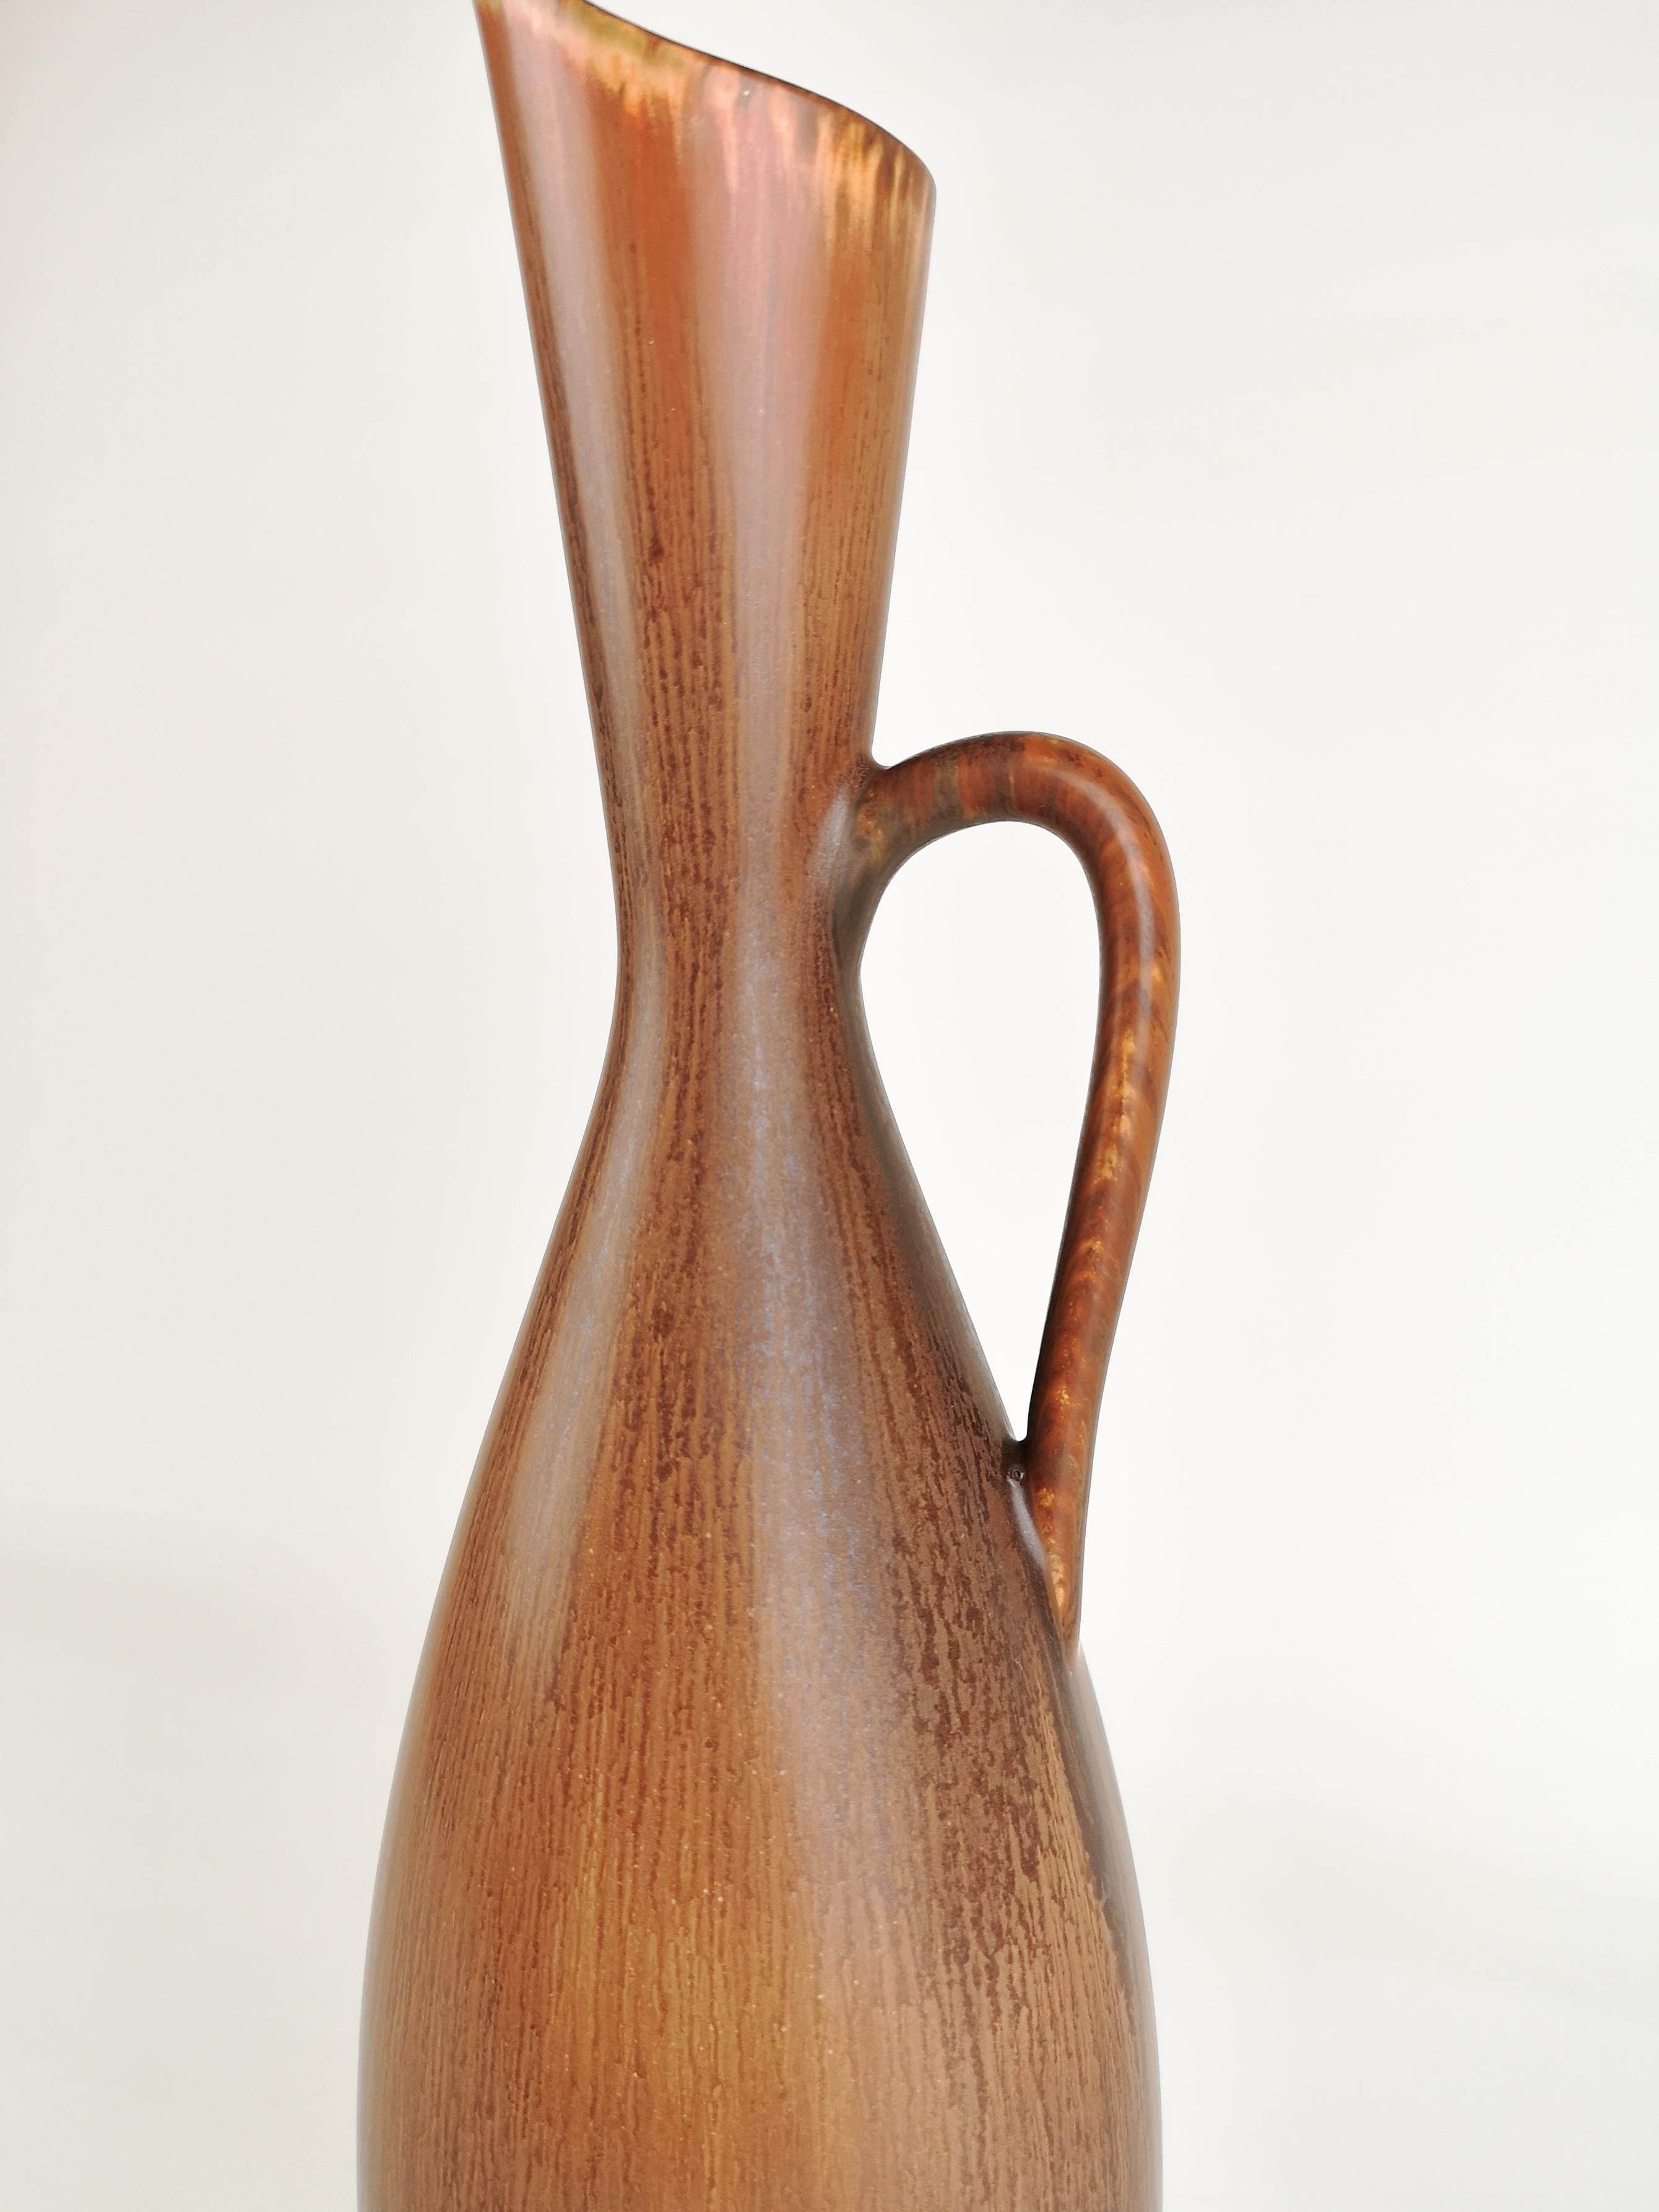 Grand vase fabriqué à Rörstrand et dont le fabricant/concepteur est Carl Harry Stålhane. Fabriqué en Suède dans les années 1950. De beaux vases émaillés avec de belles lignes. 

Bon état vintage.

Mesure H 32 cm, D 11 cm.

 